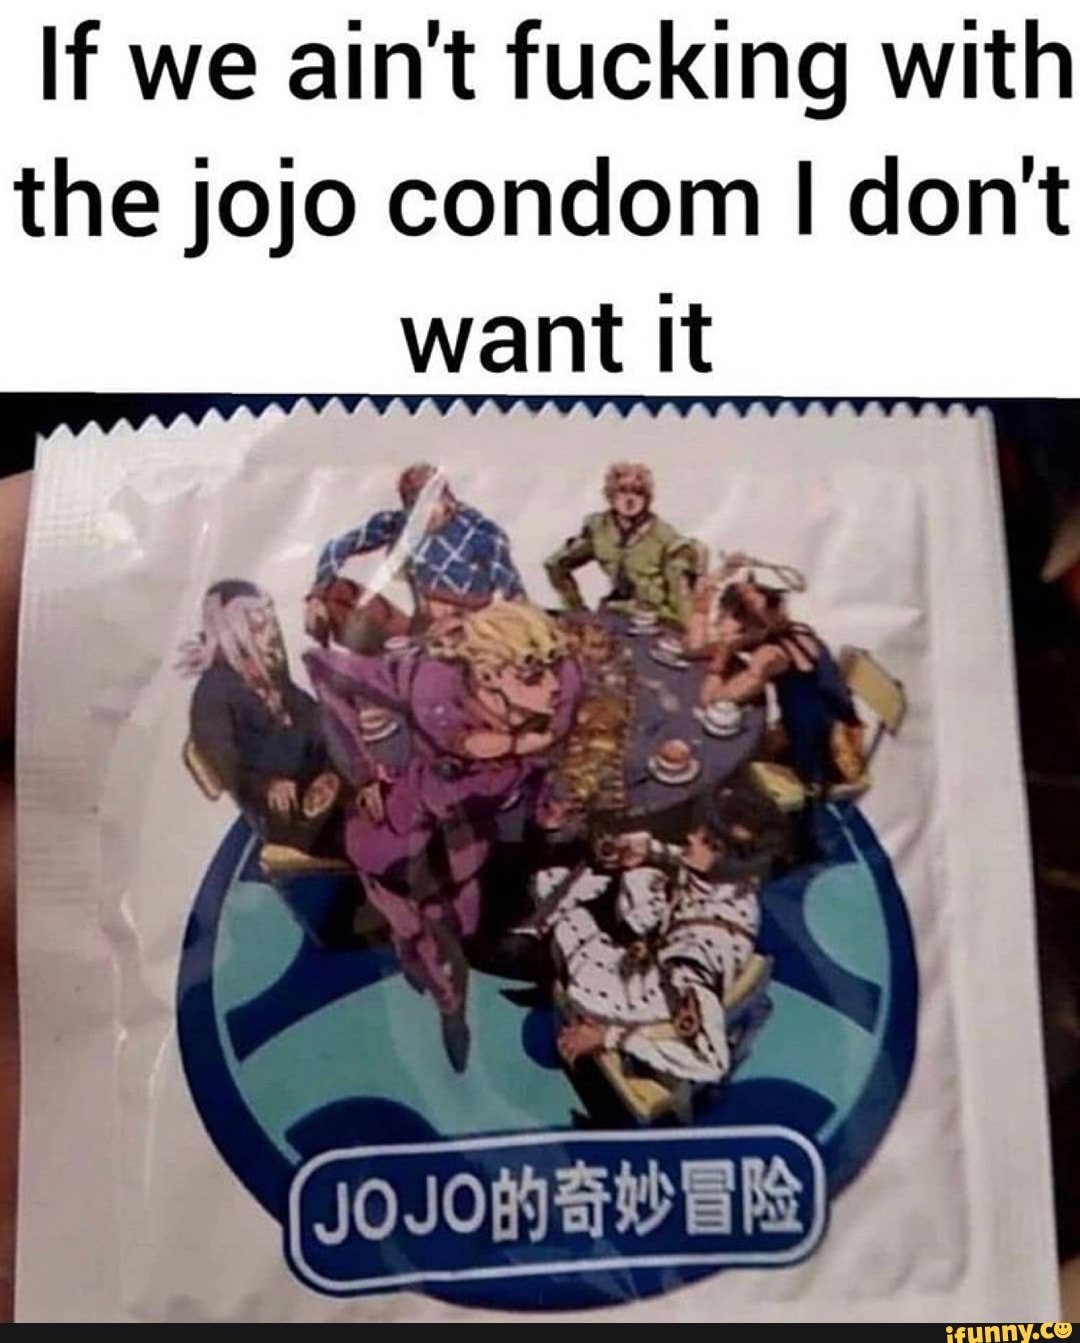 Jojo condoms